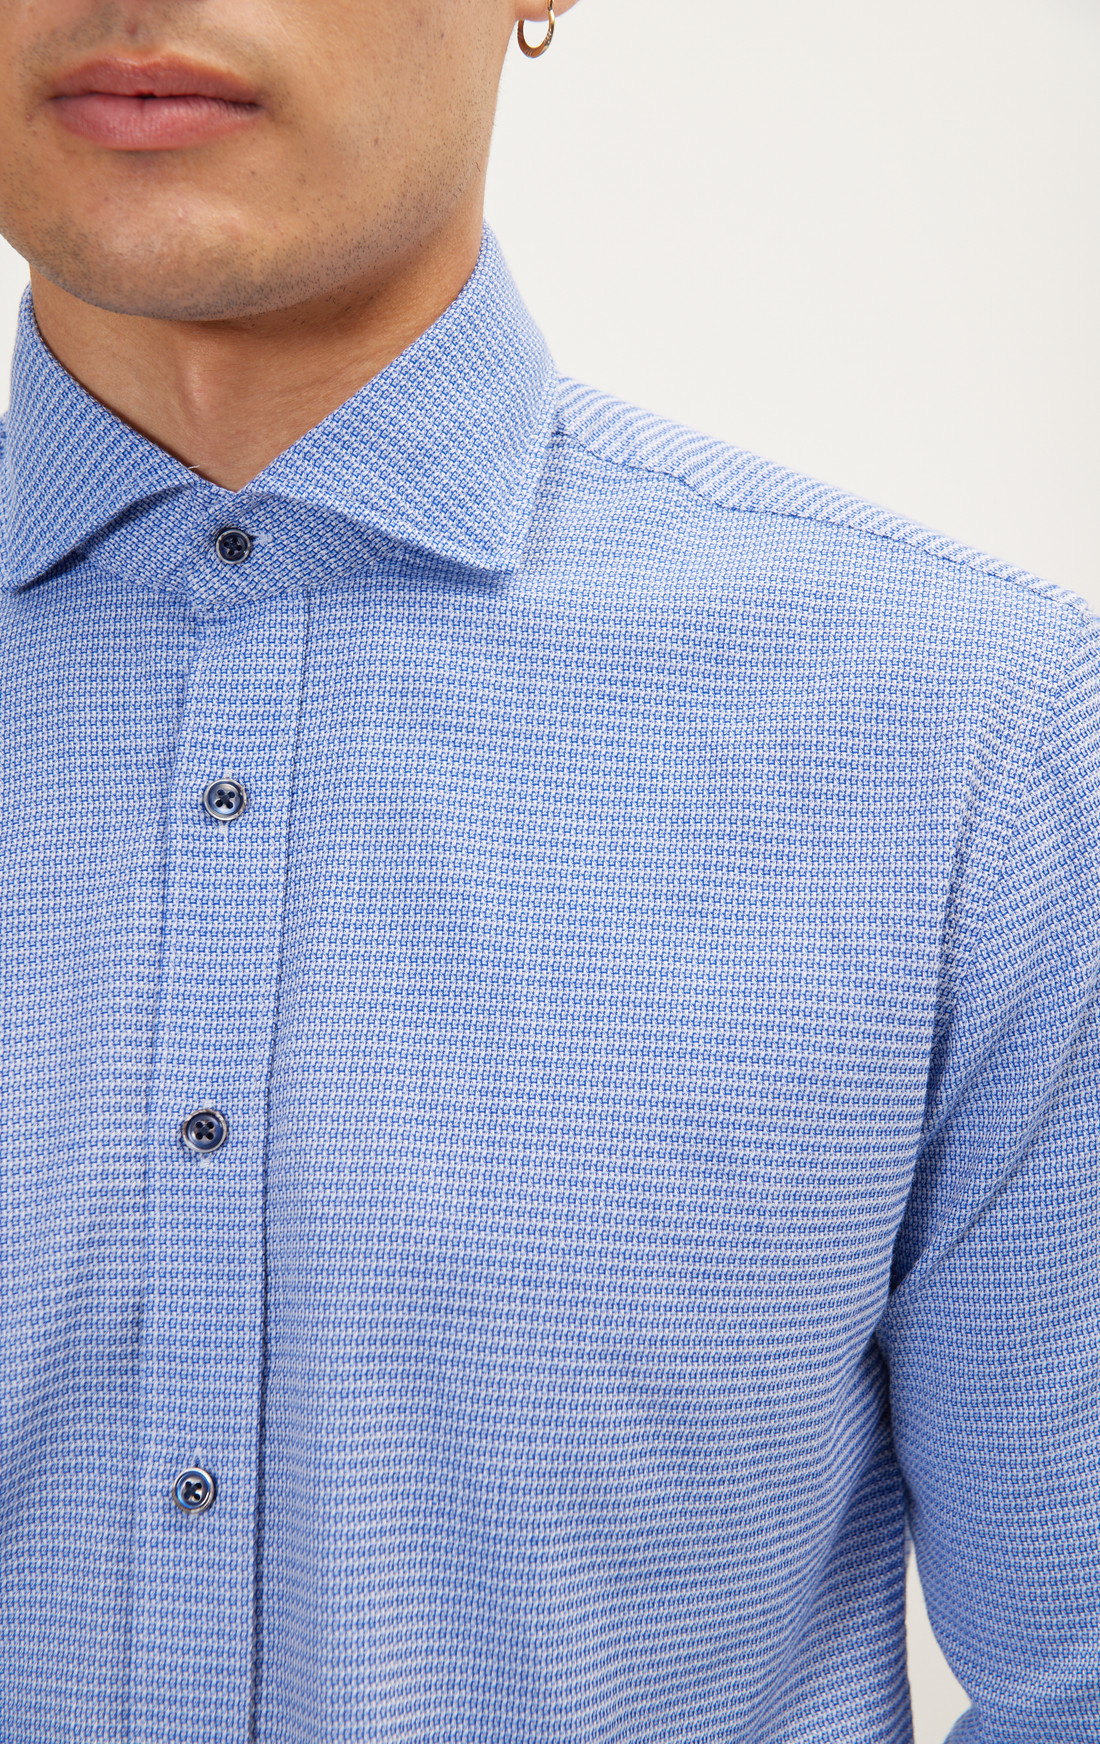 Camisa de vestir casual con botones - Azul